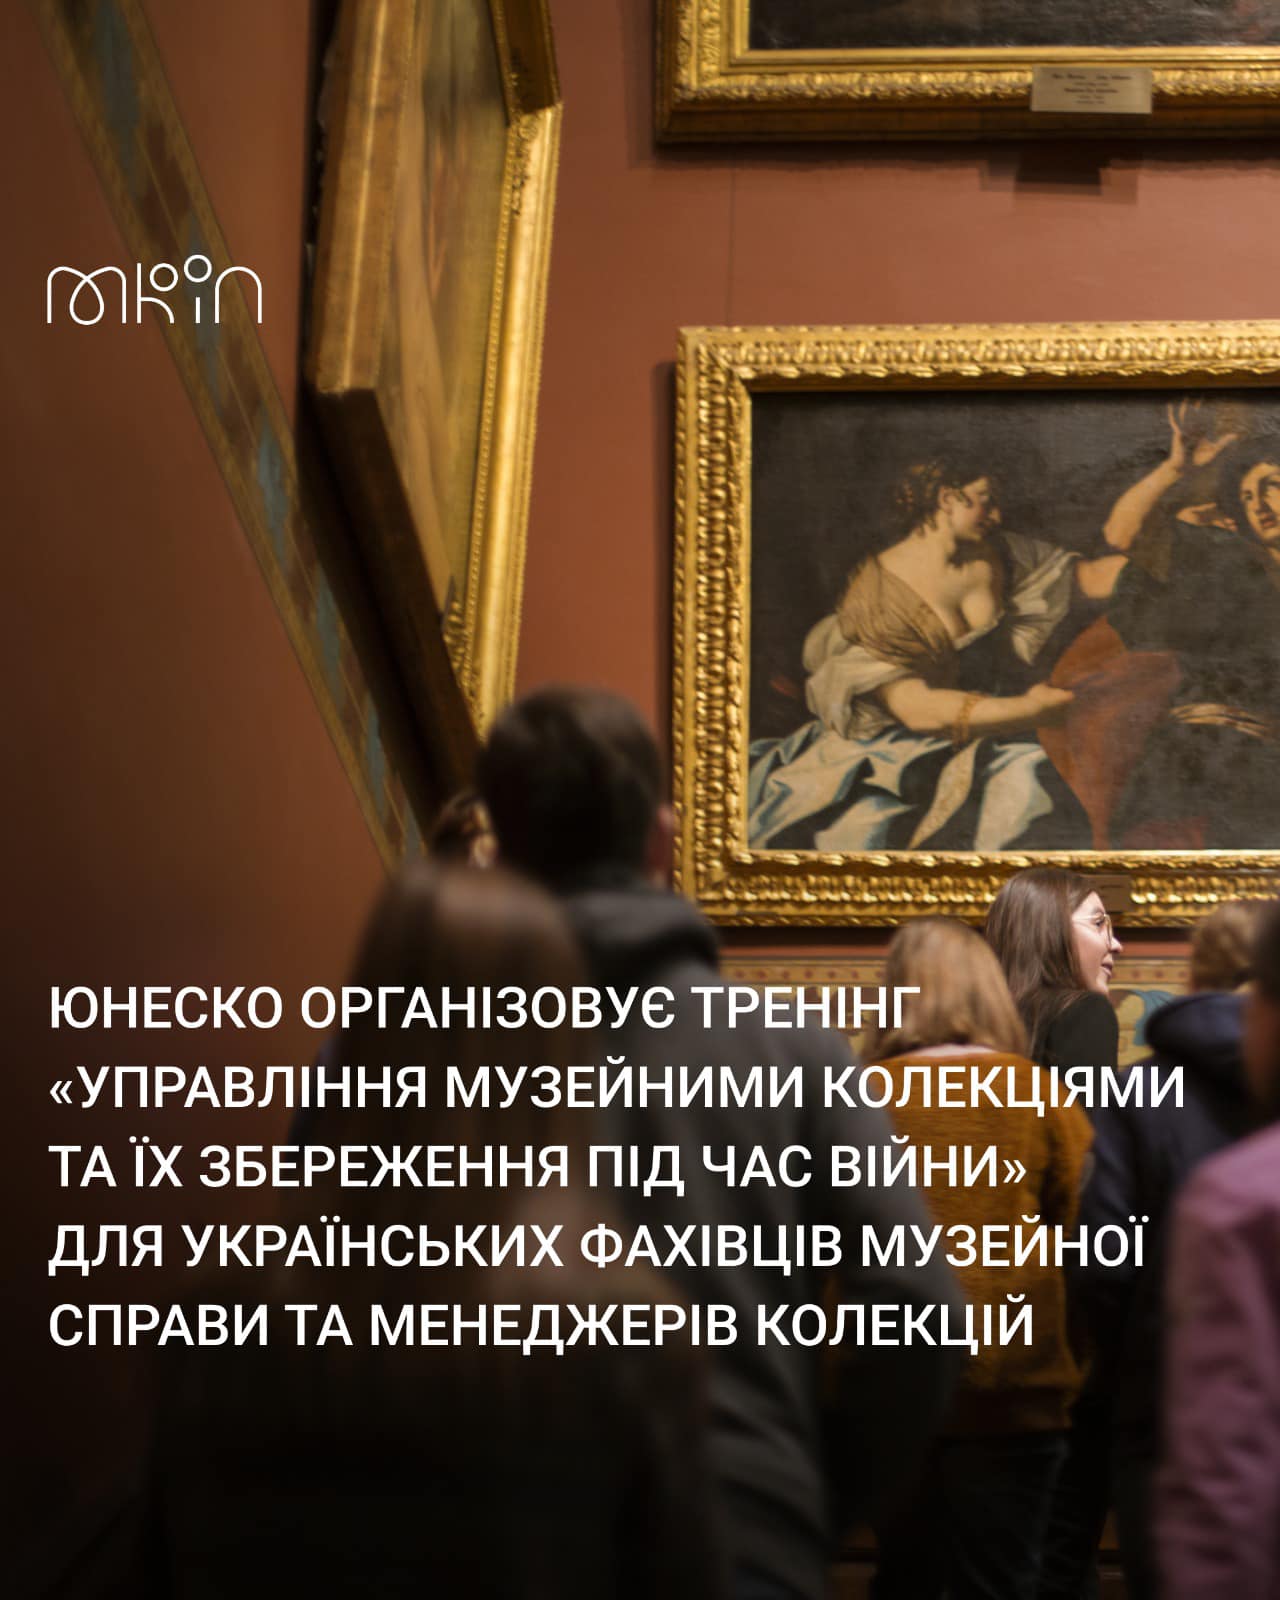 ЮНЕСКО організовує тренінг «Управління музейними колекціями та їх збереження під час війни» для українських фахівців музейної справи та менеджерів колекцій